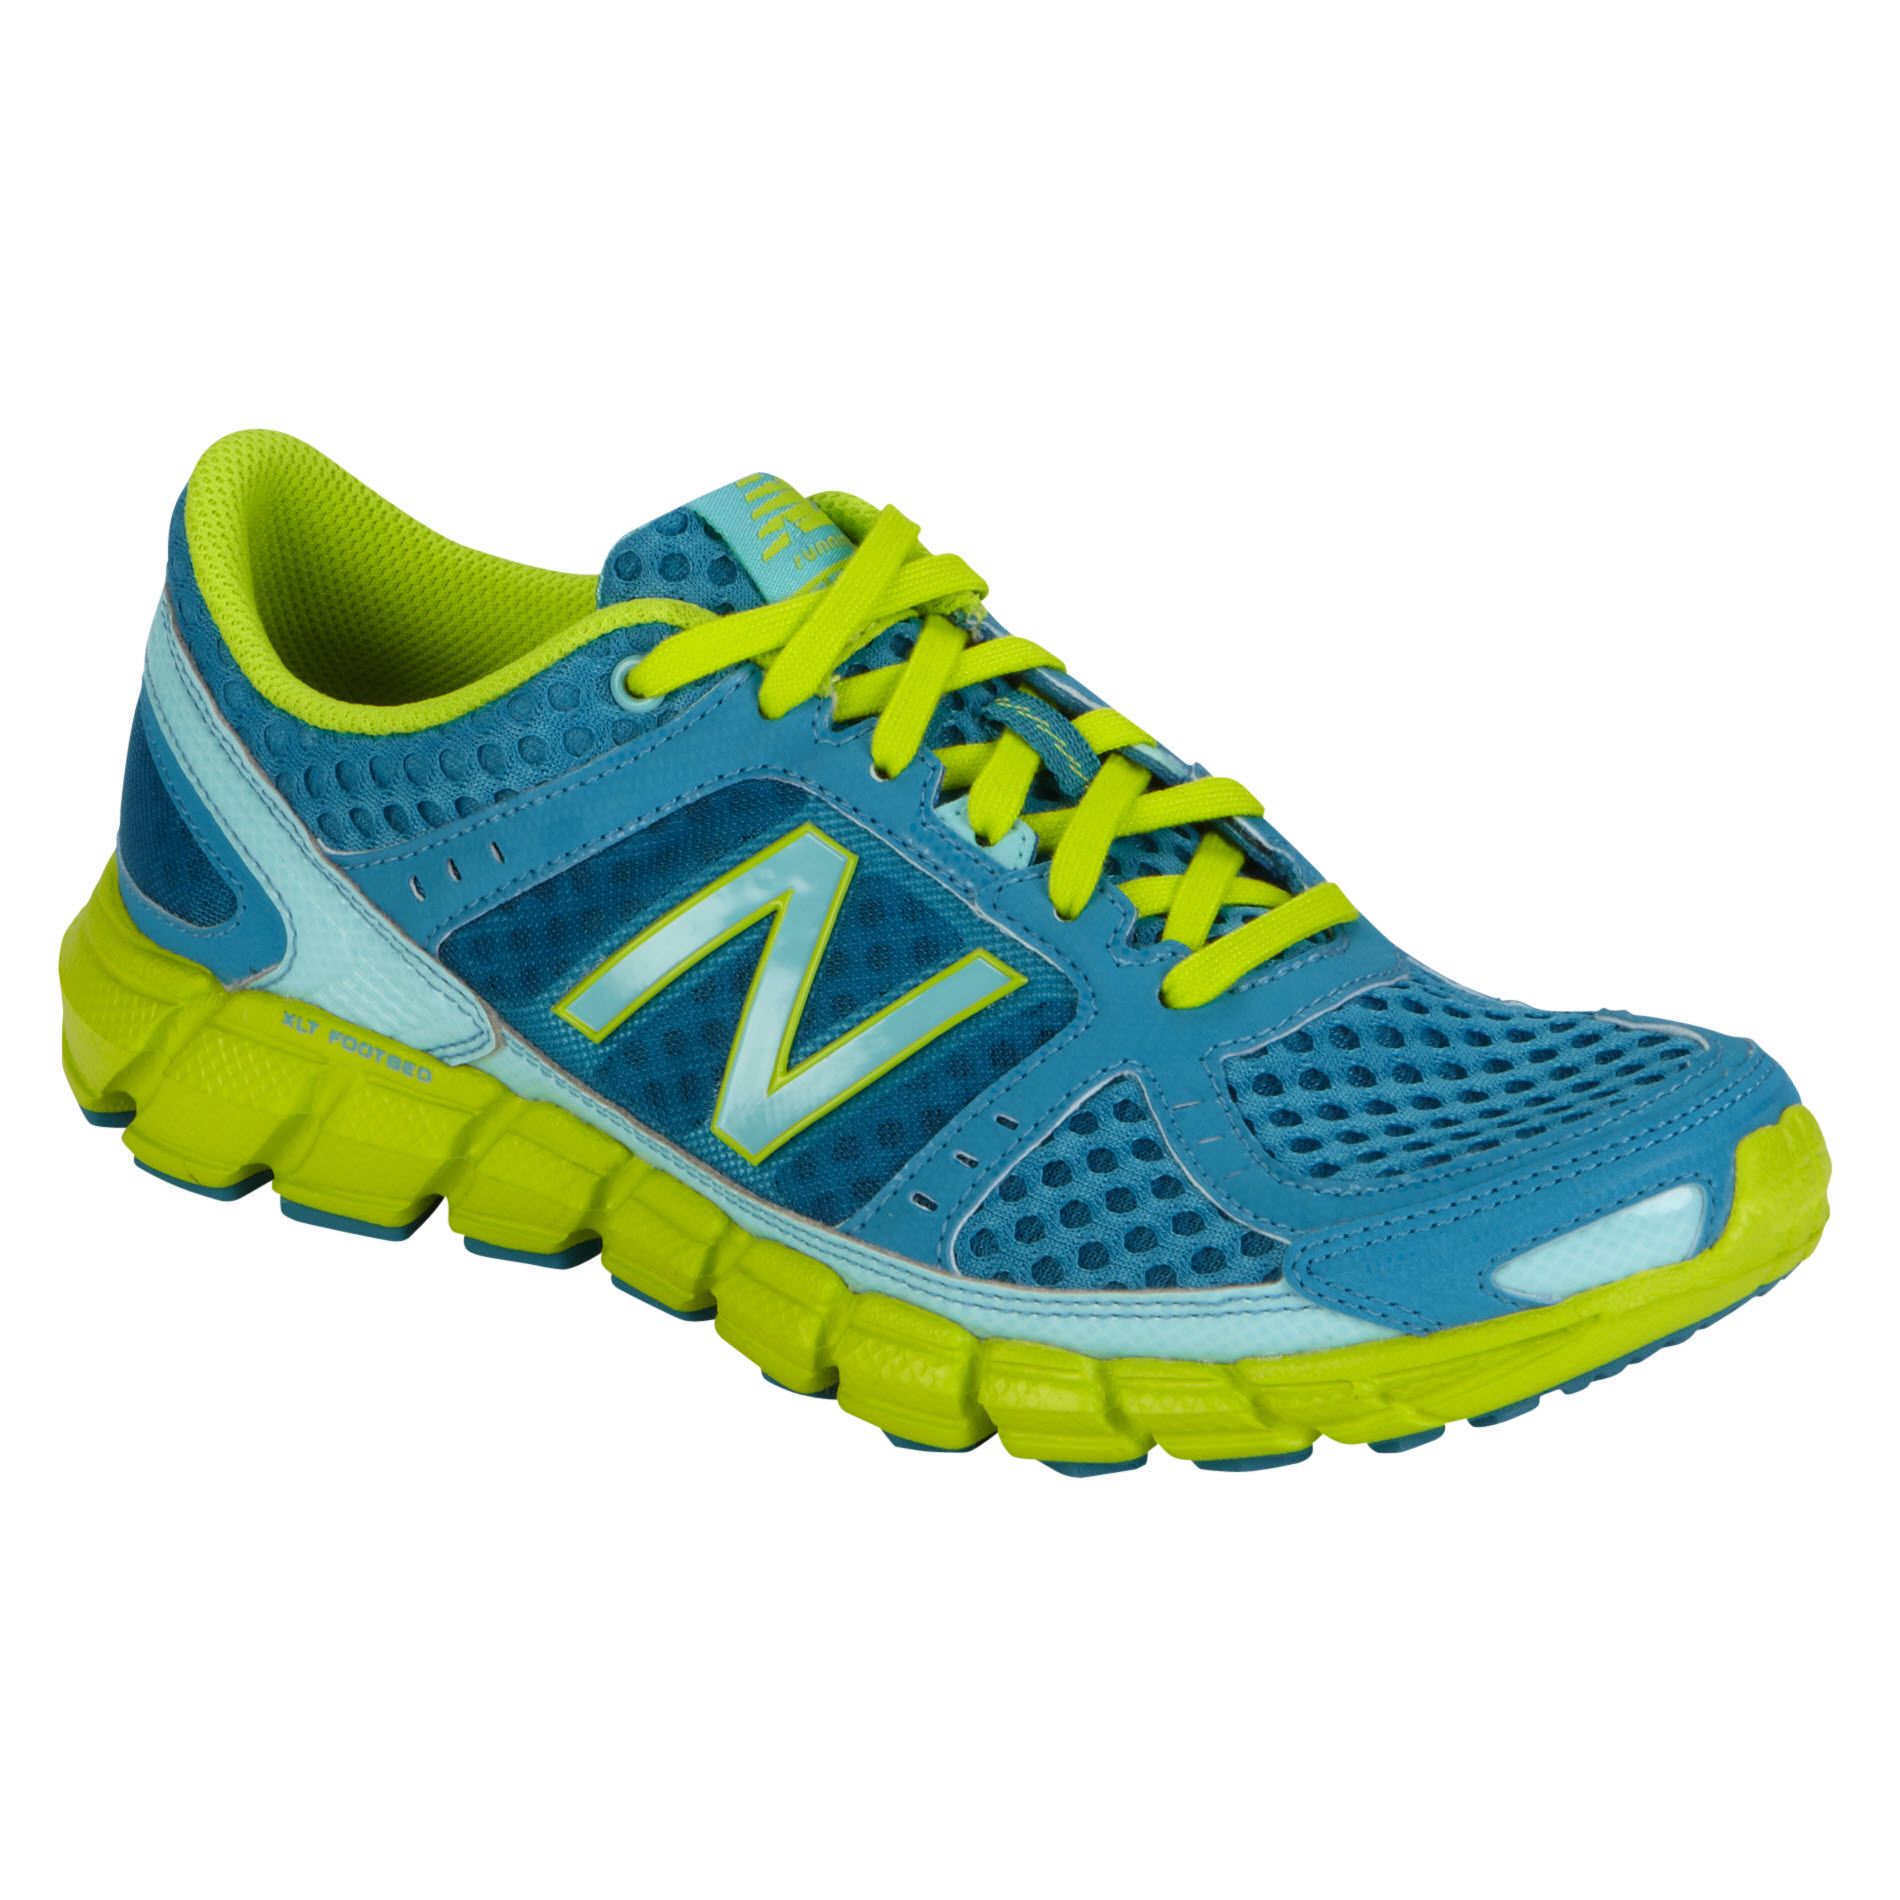 New Balance Women's 750V1 Running Athletic Shoe - Blue/Lime